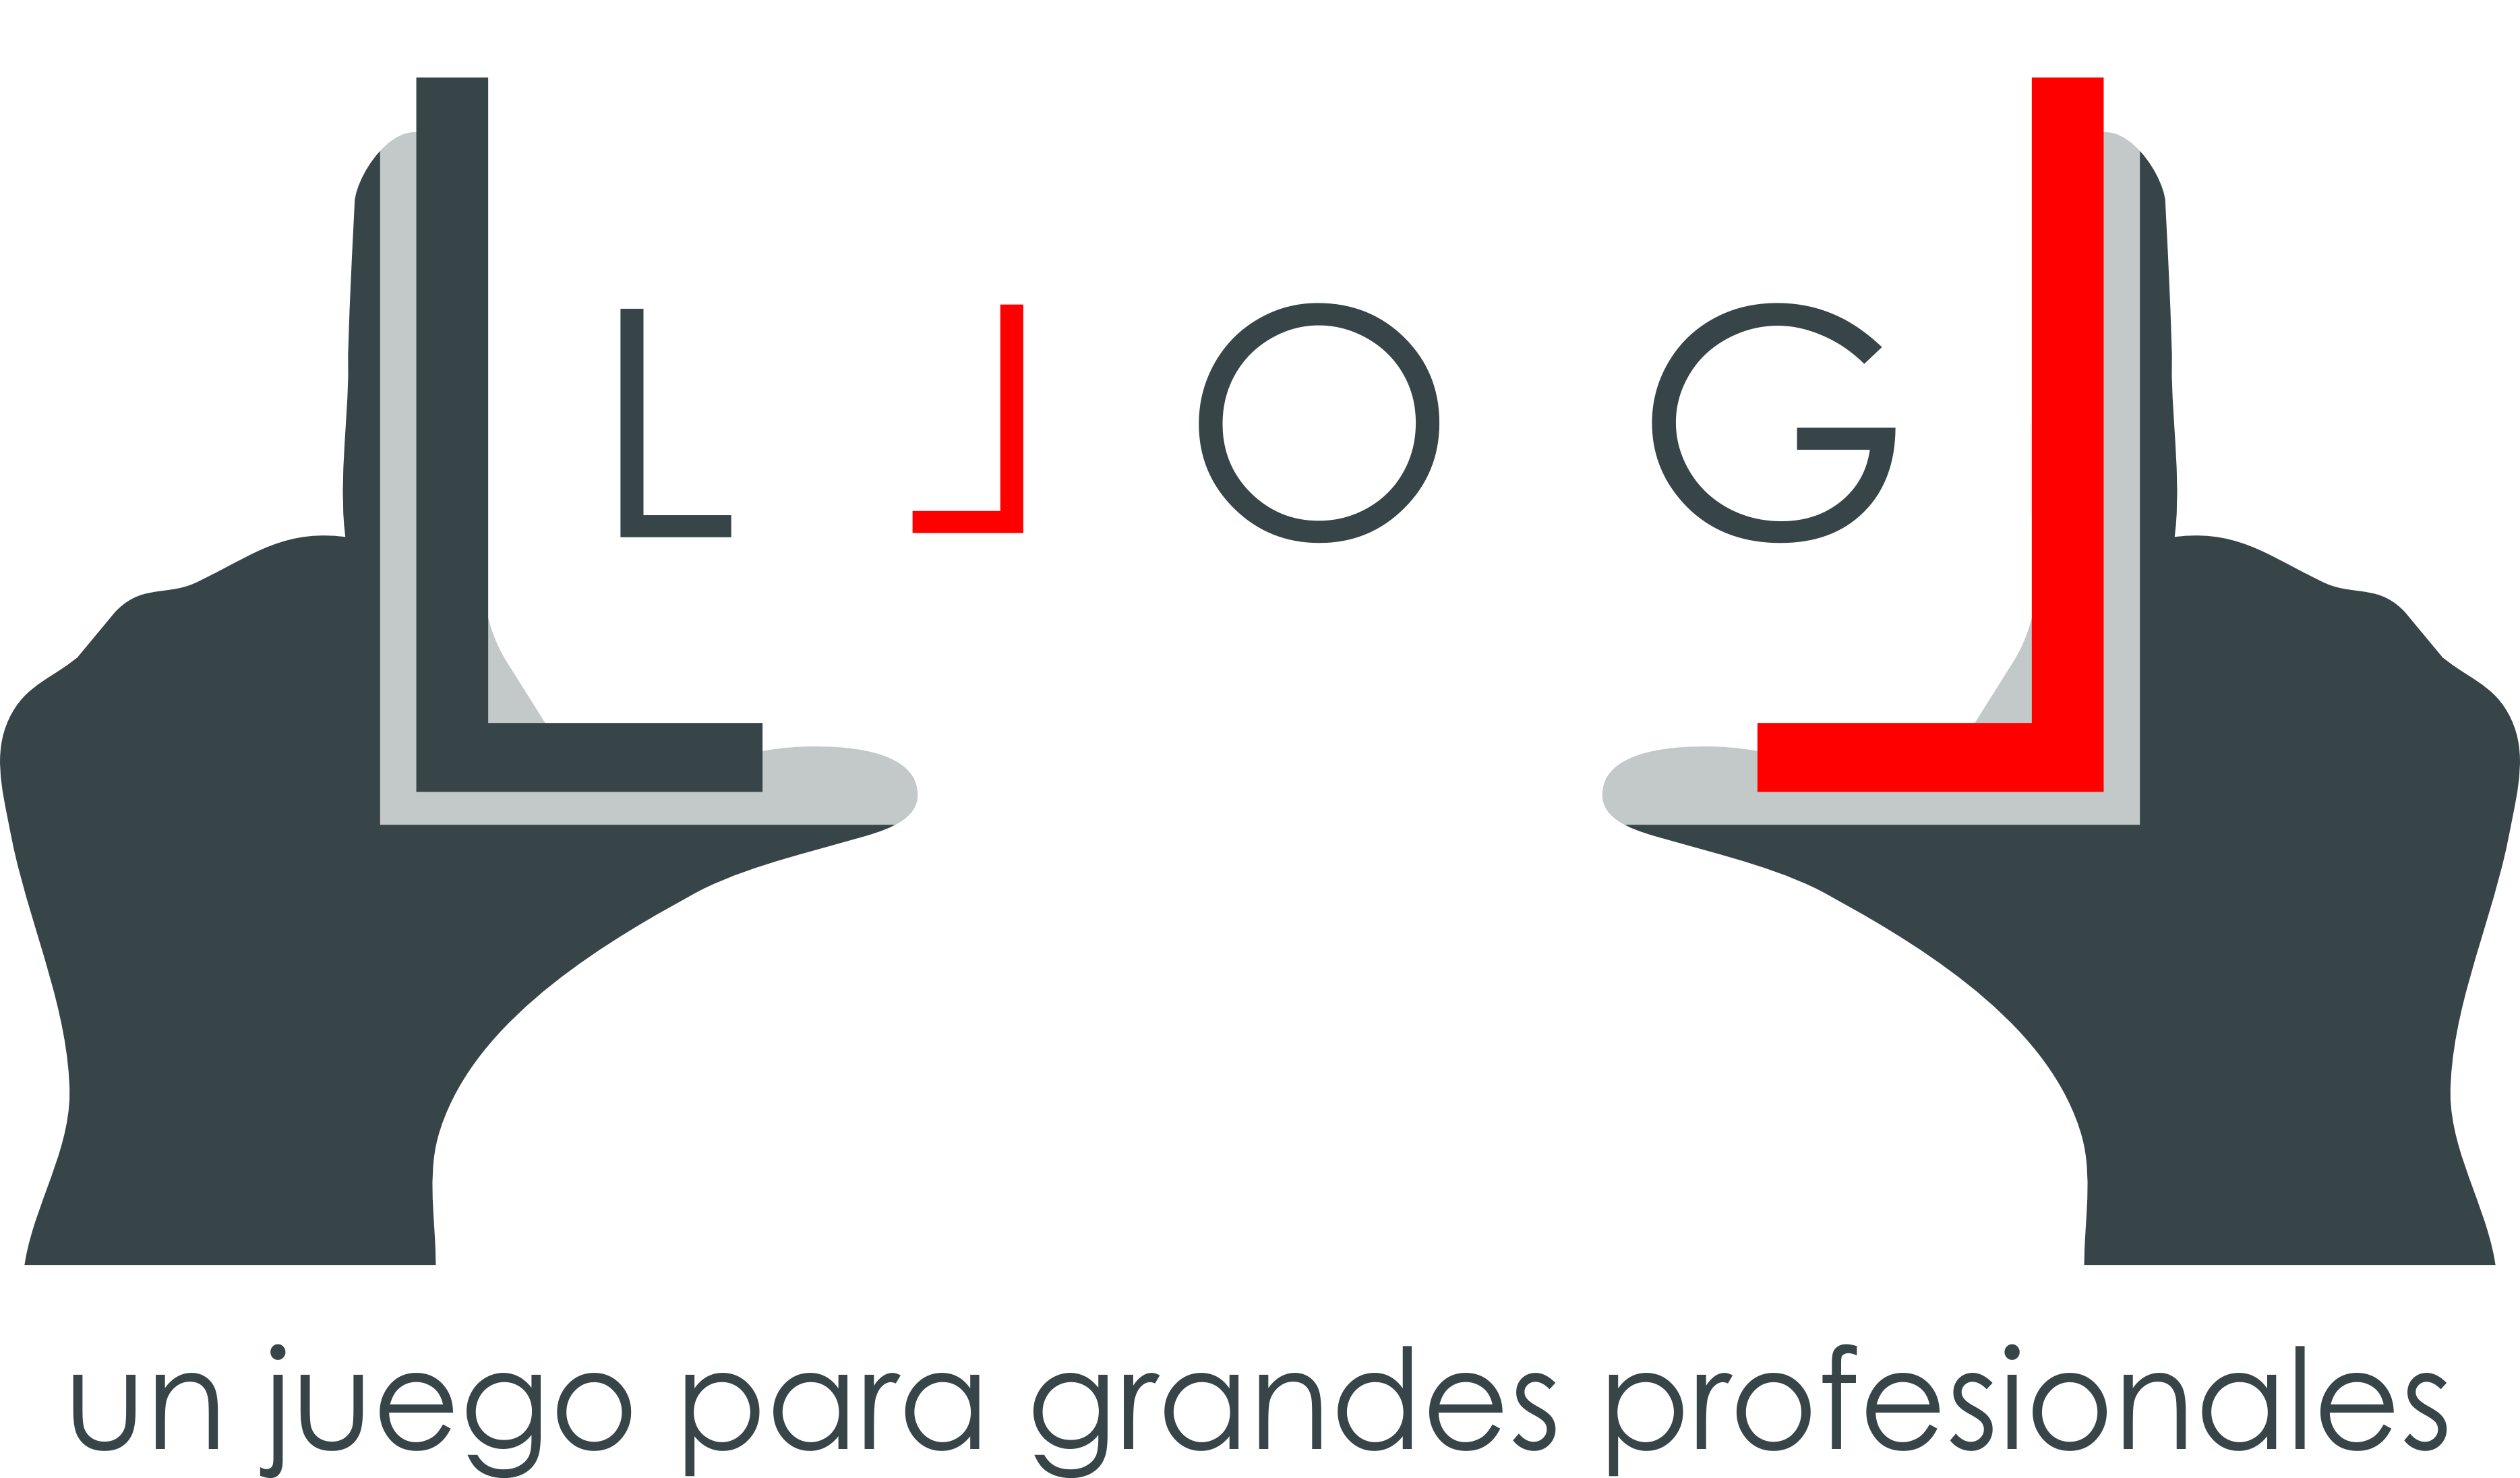 Llog Logo - LLOG - el vídeo de la experiencia de los alumnos (parte 3) - nova blog